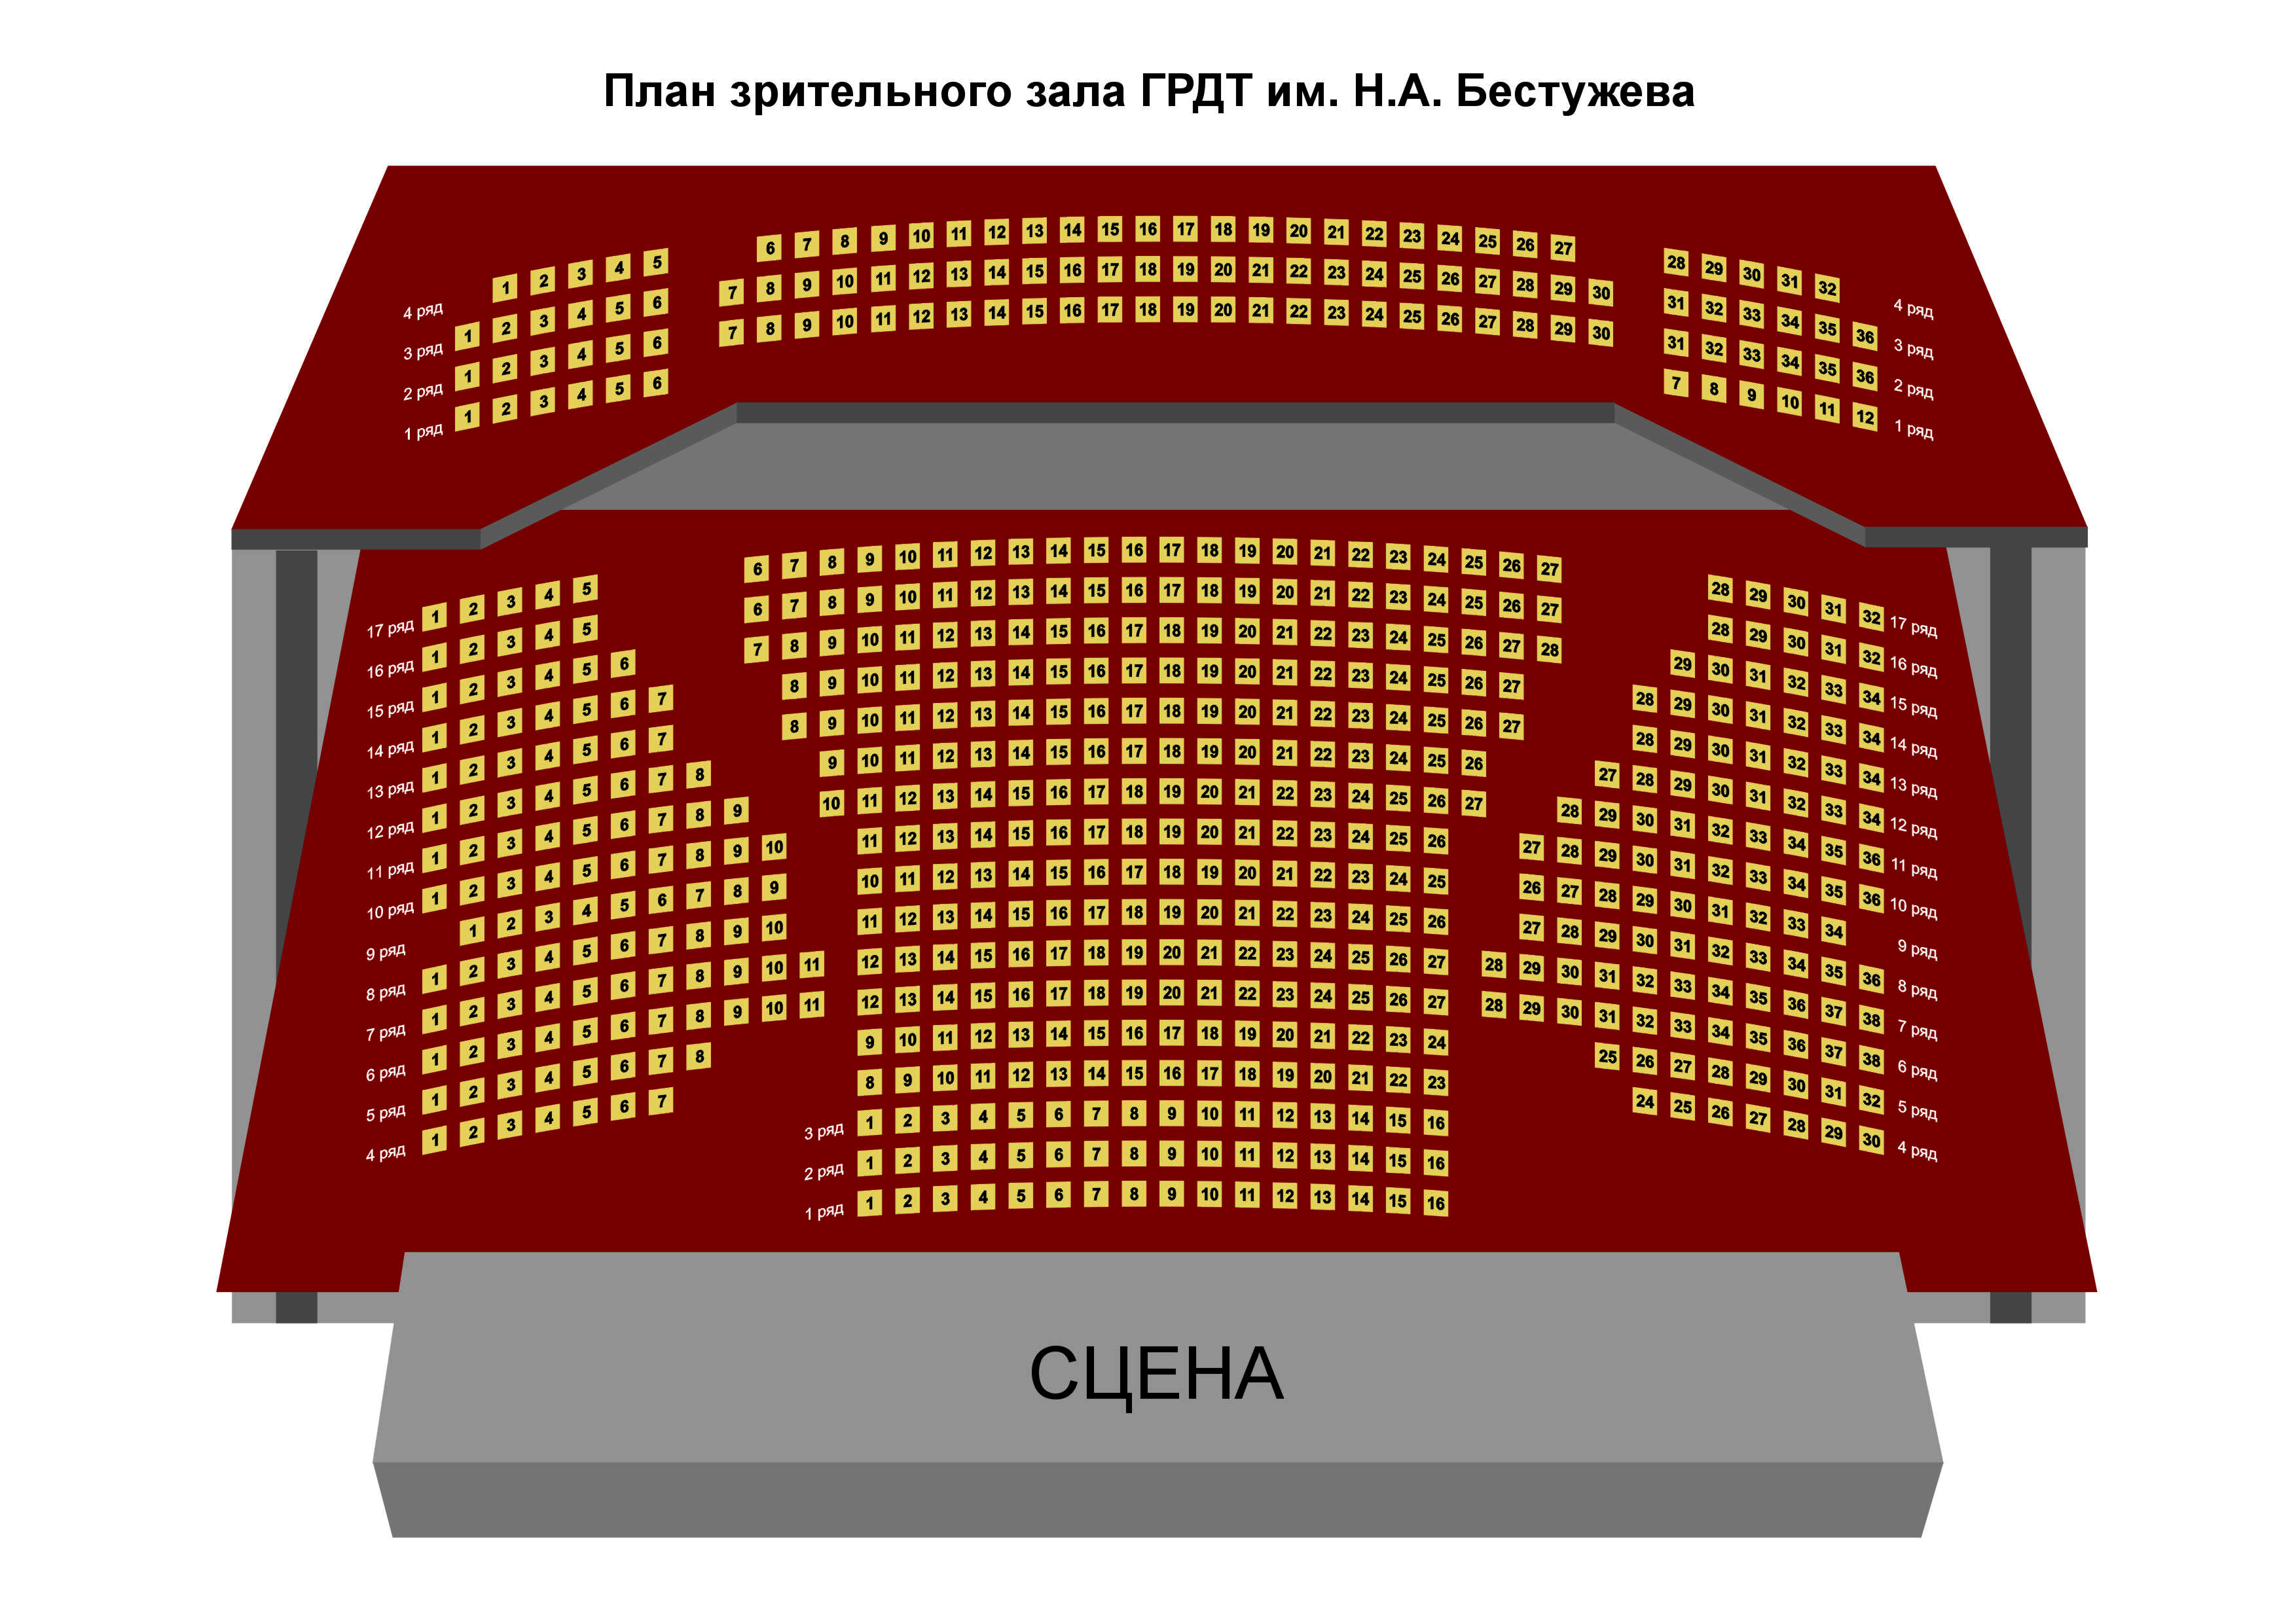 Театр расположение мест в зале схема